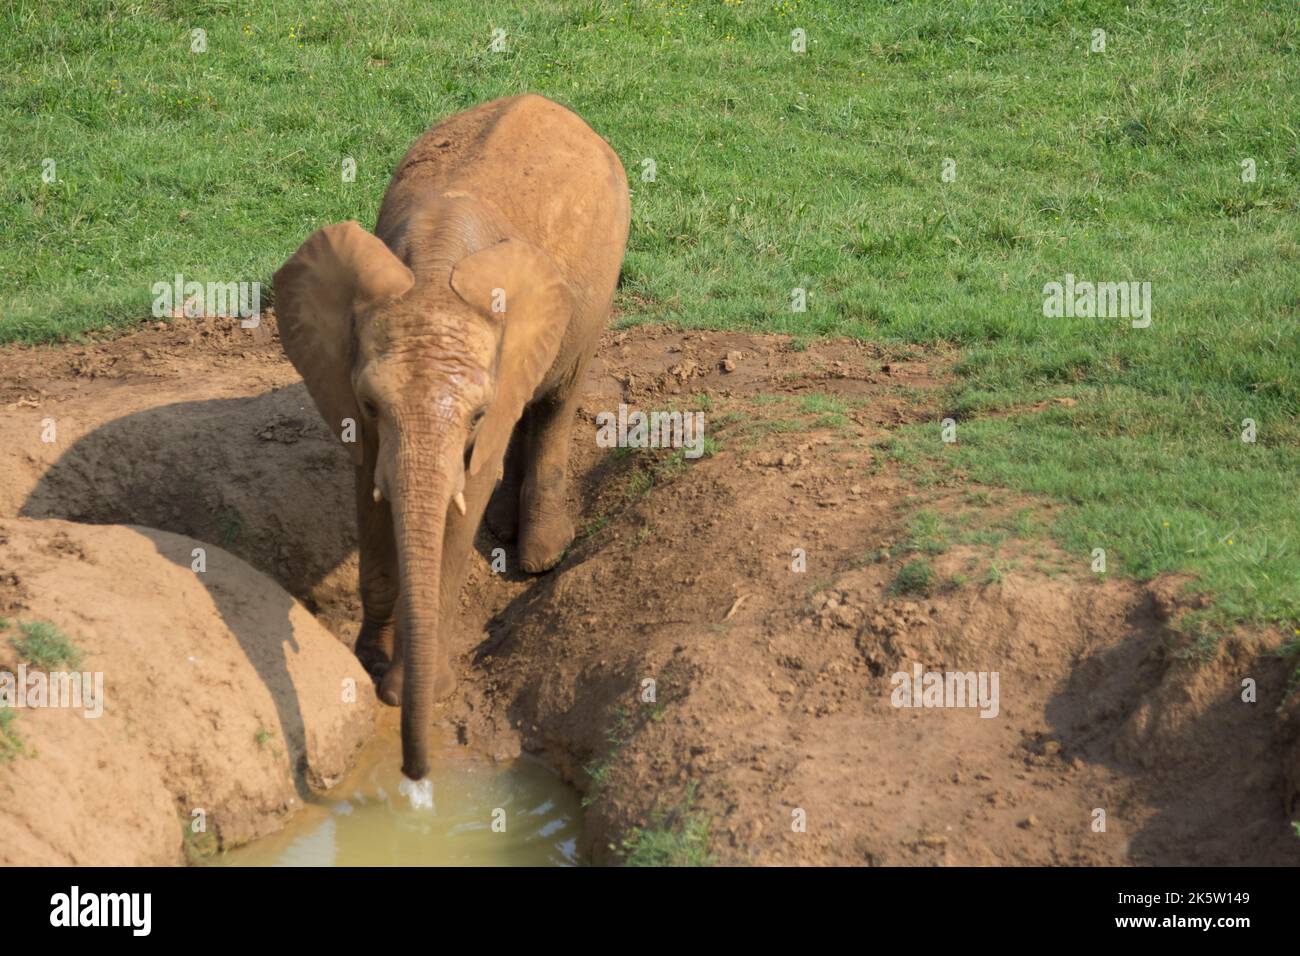 l'eau potable de l'éléphant brun d'un étang dans le sol avec son tronc Banque D'Images